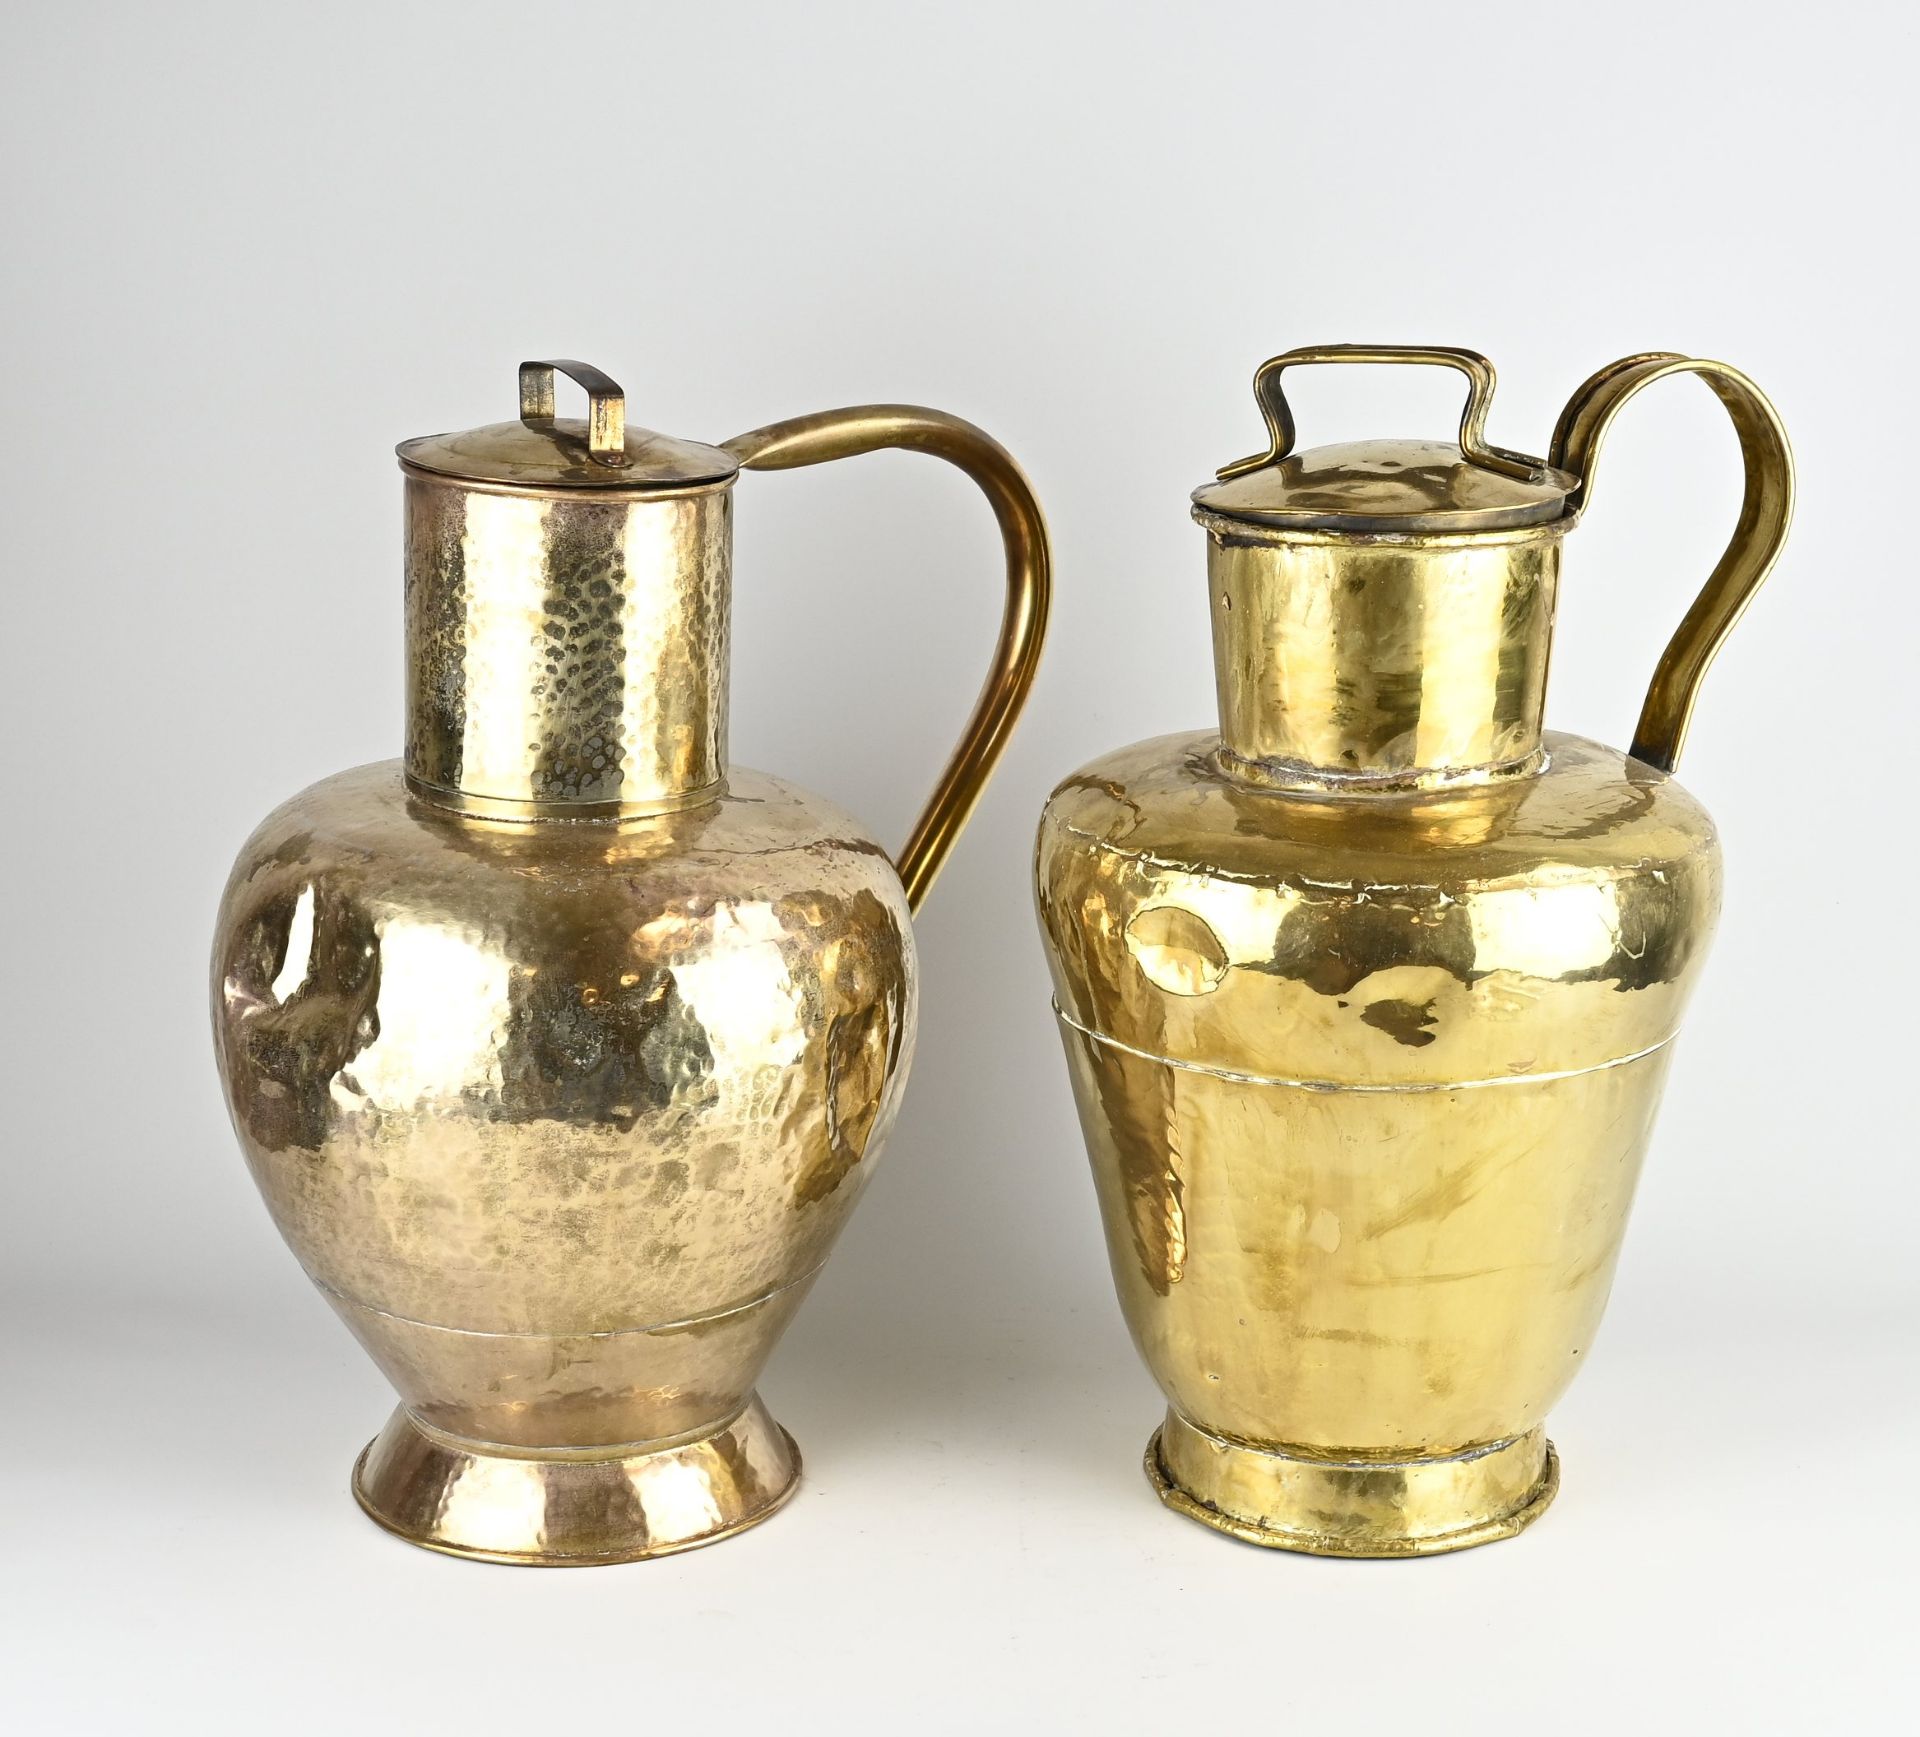 Two antique brass milk jugs, 1900